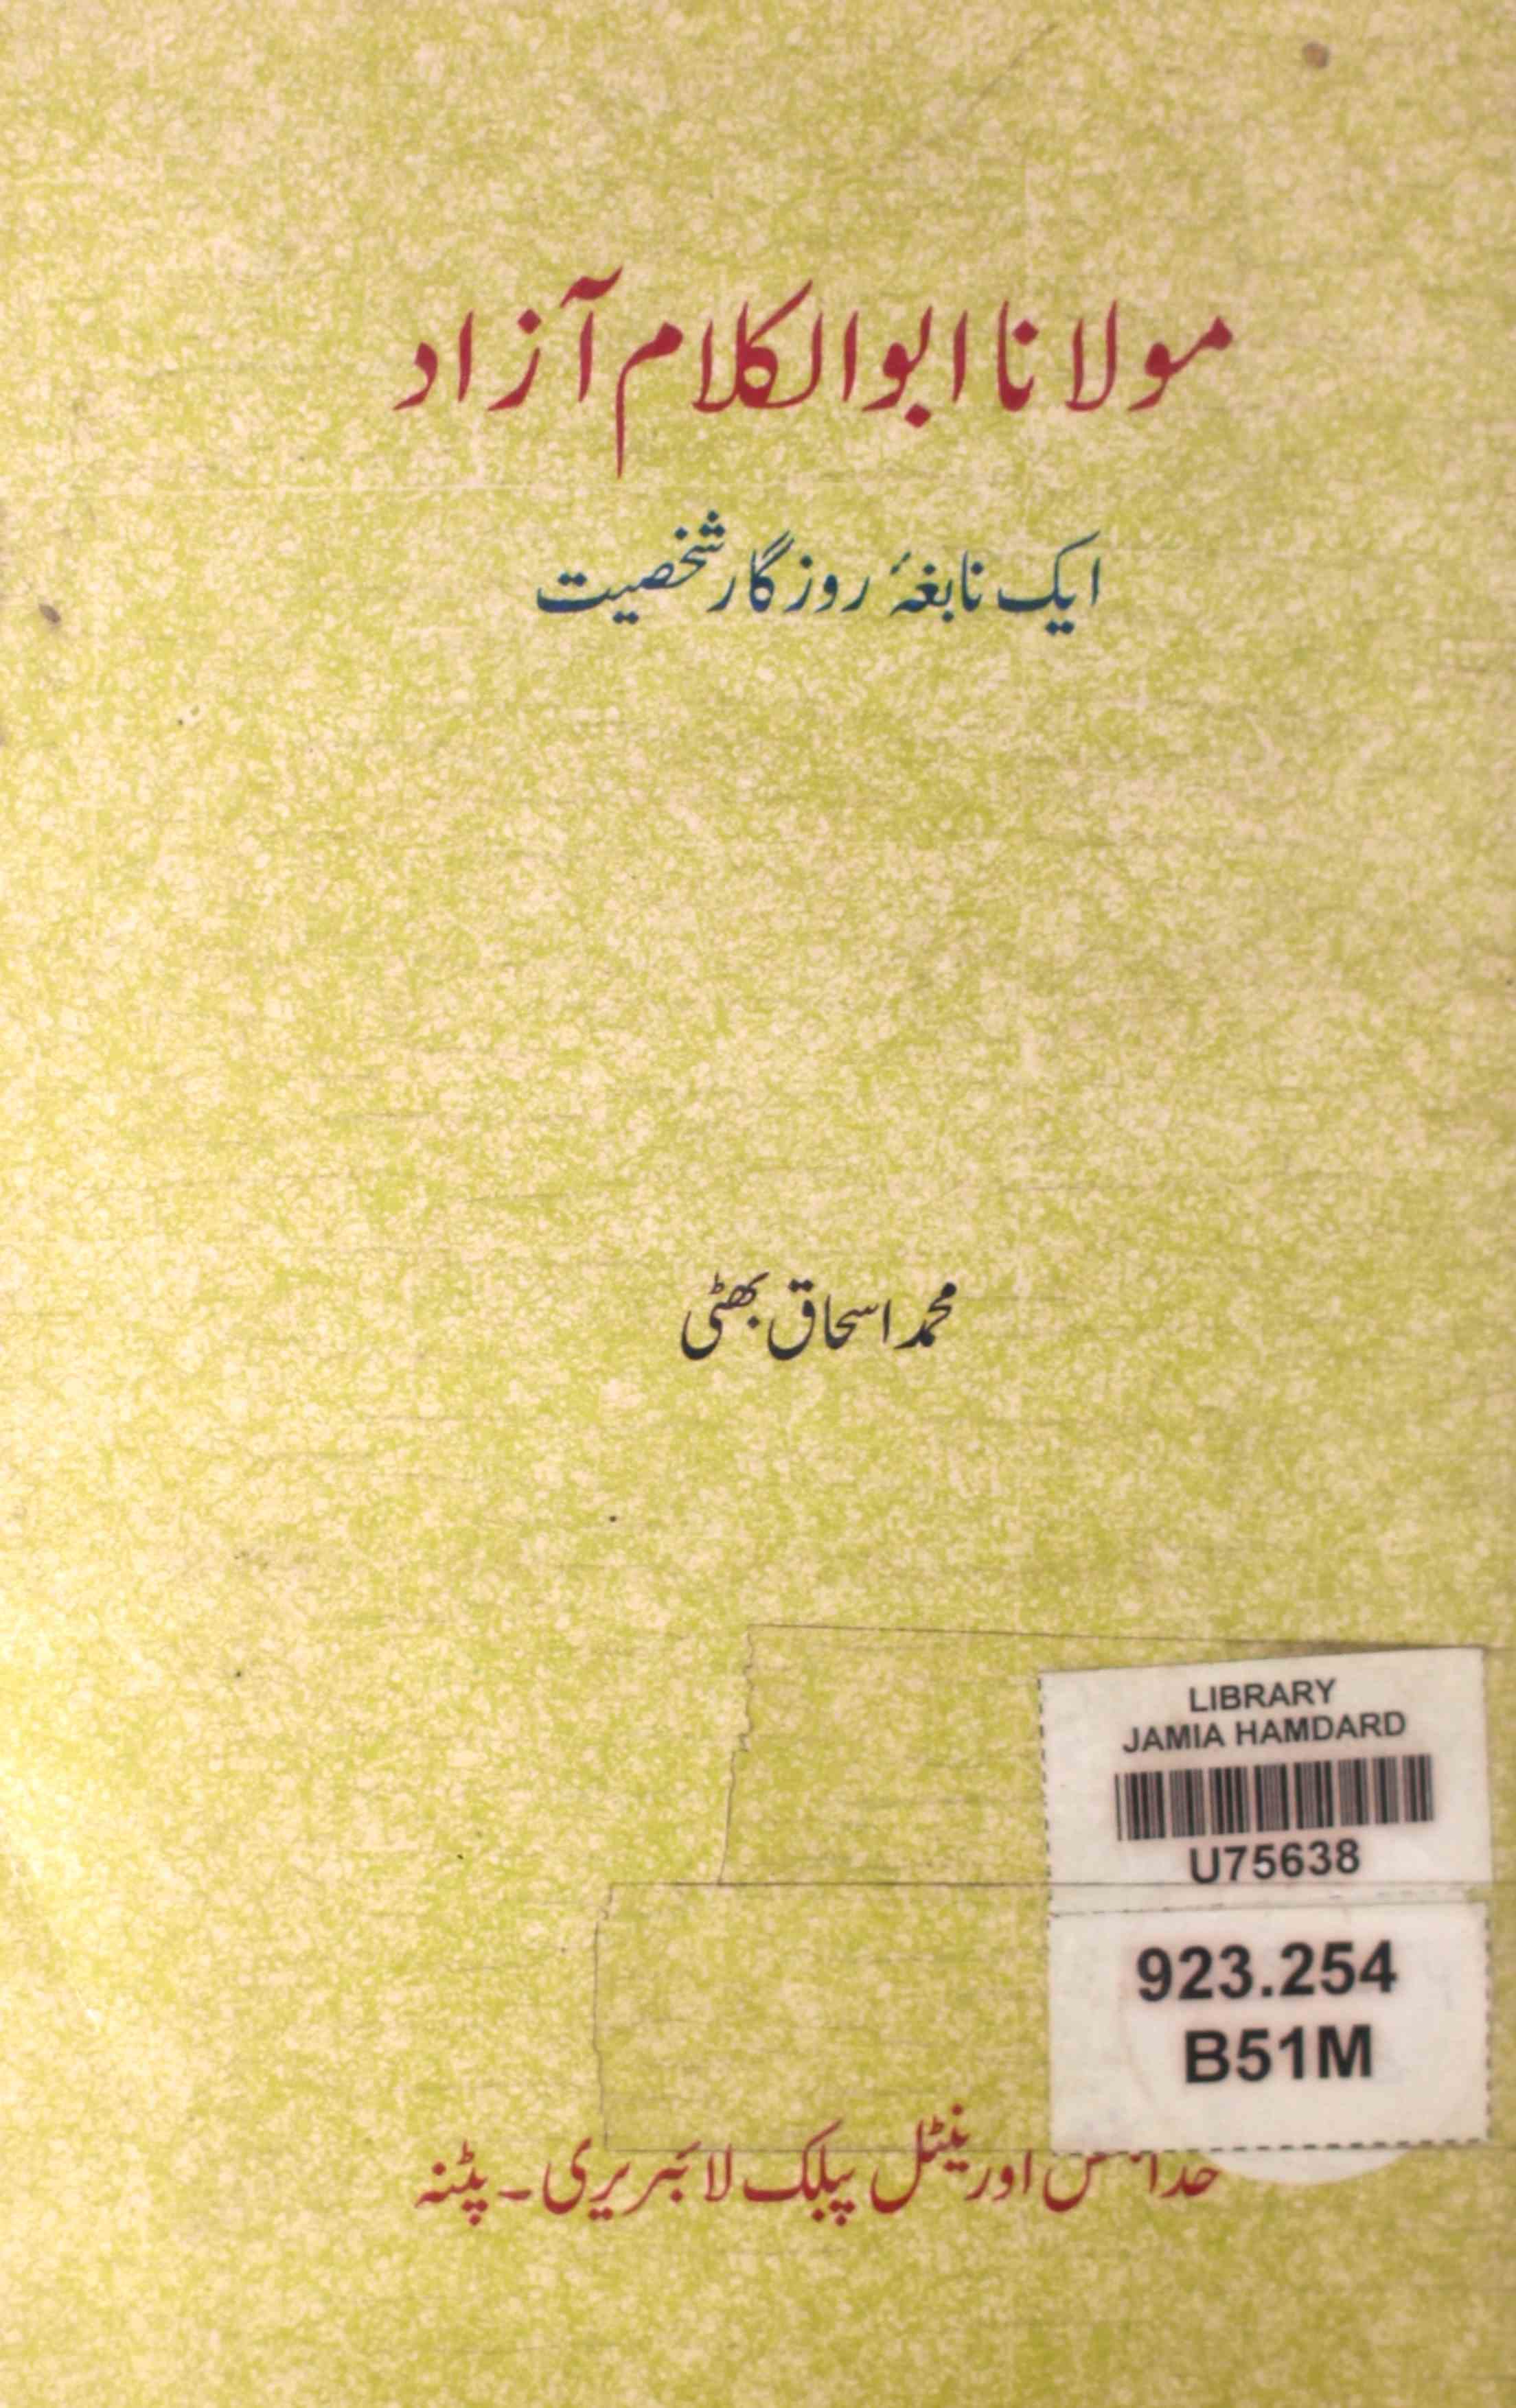 maulana abul kalam aazad ek nabgha-e-rozgar shakhsiyat